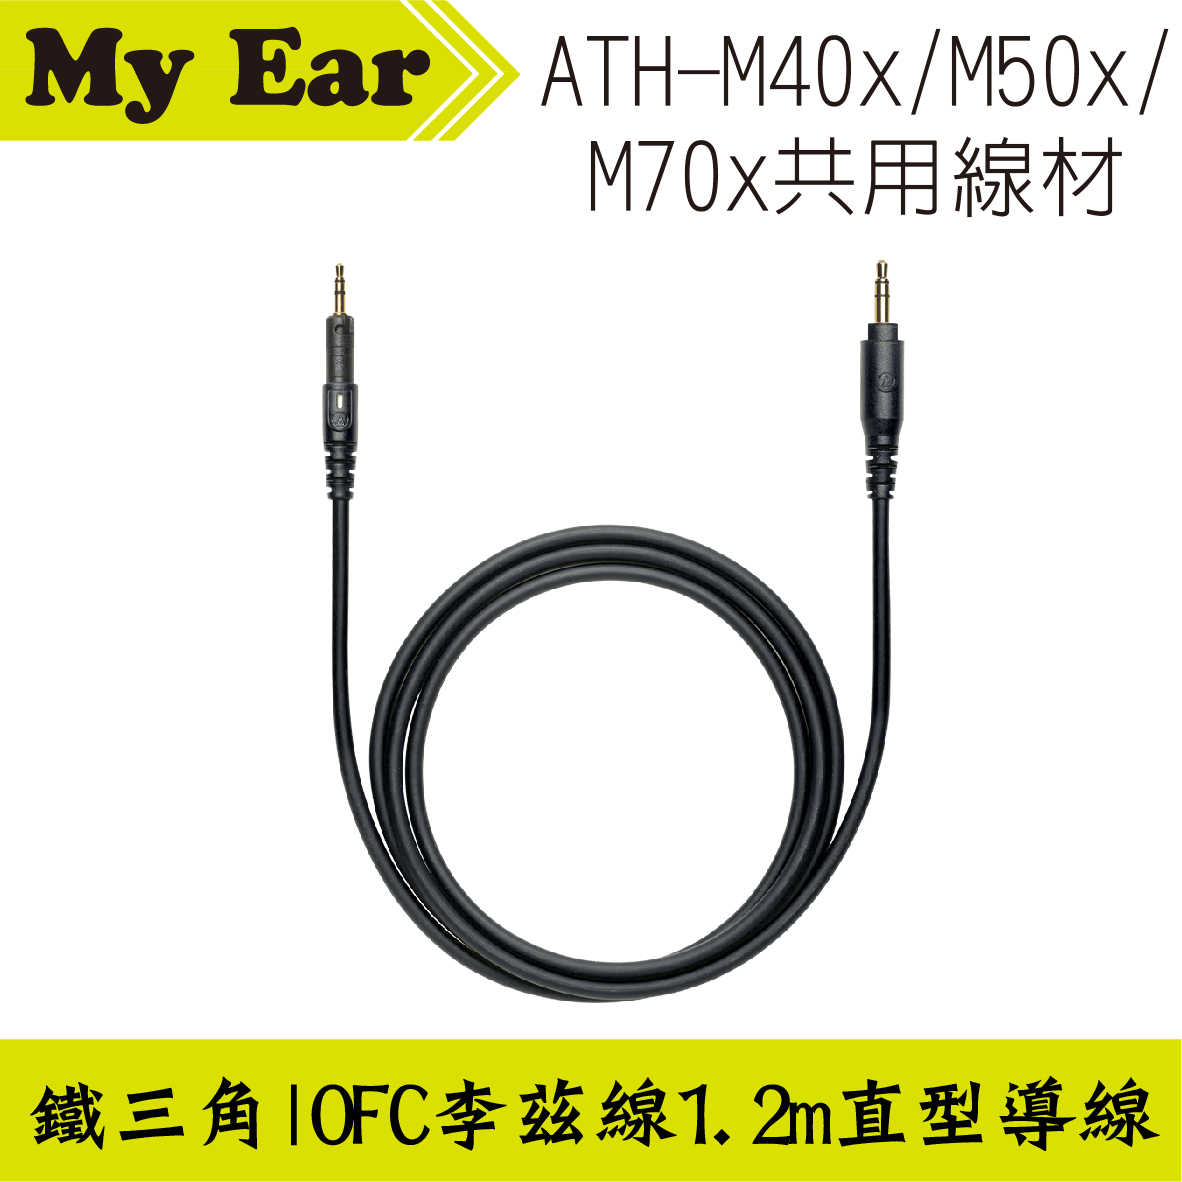 鐵三角 ATH-M40x M50x M70x 適用 可拆式 直型導線 1.2m | My Ear 耳機專門店